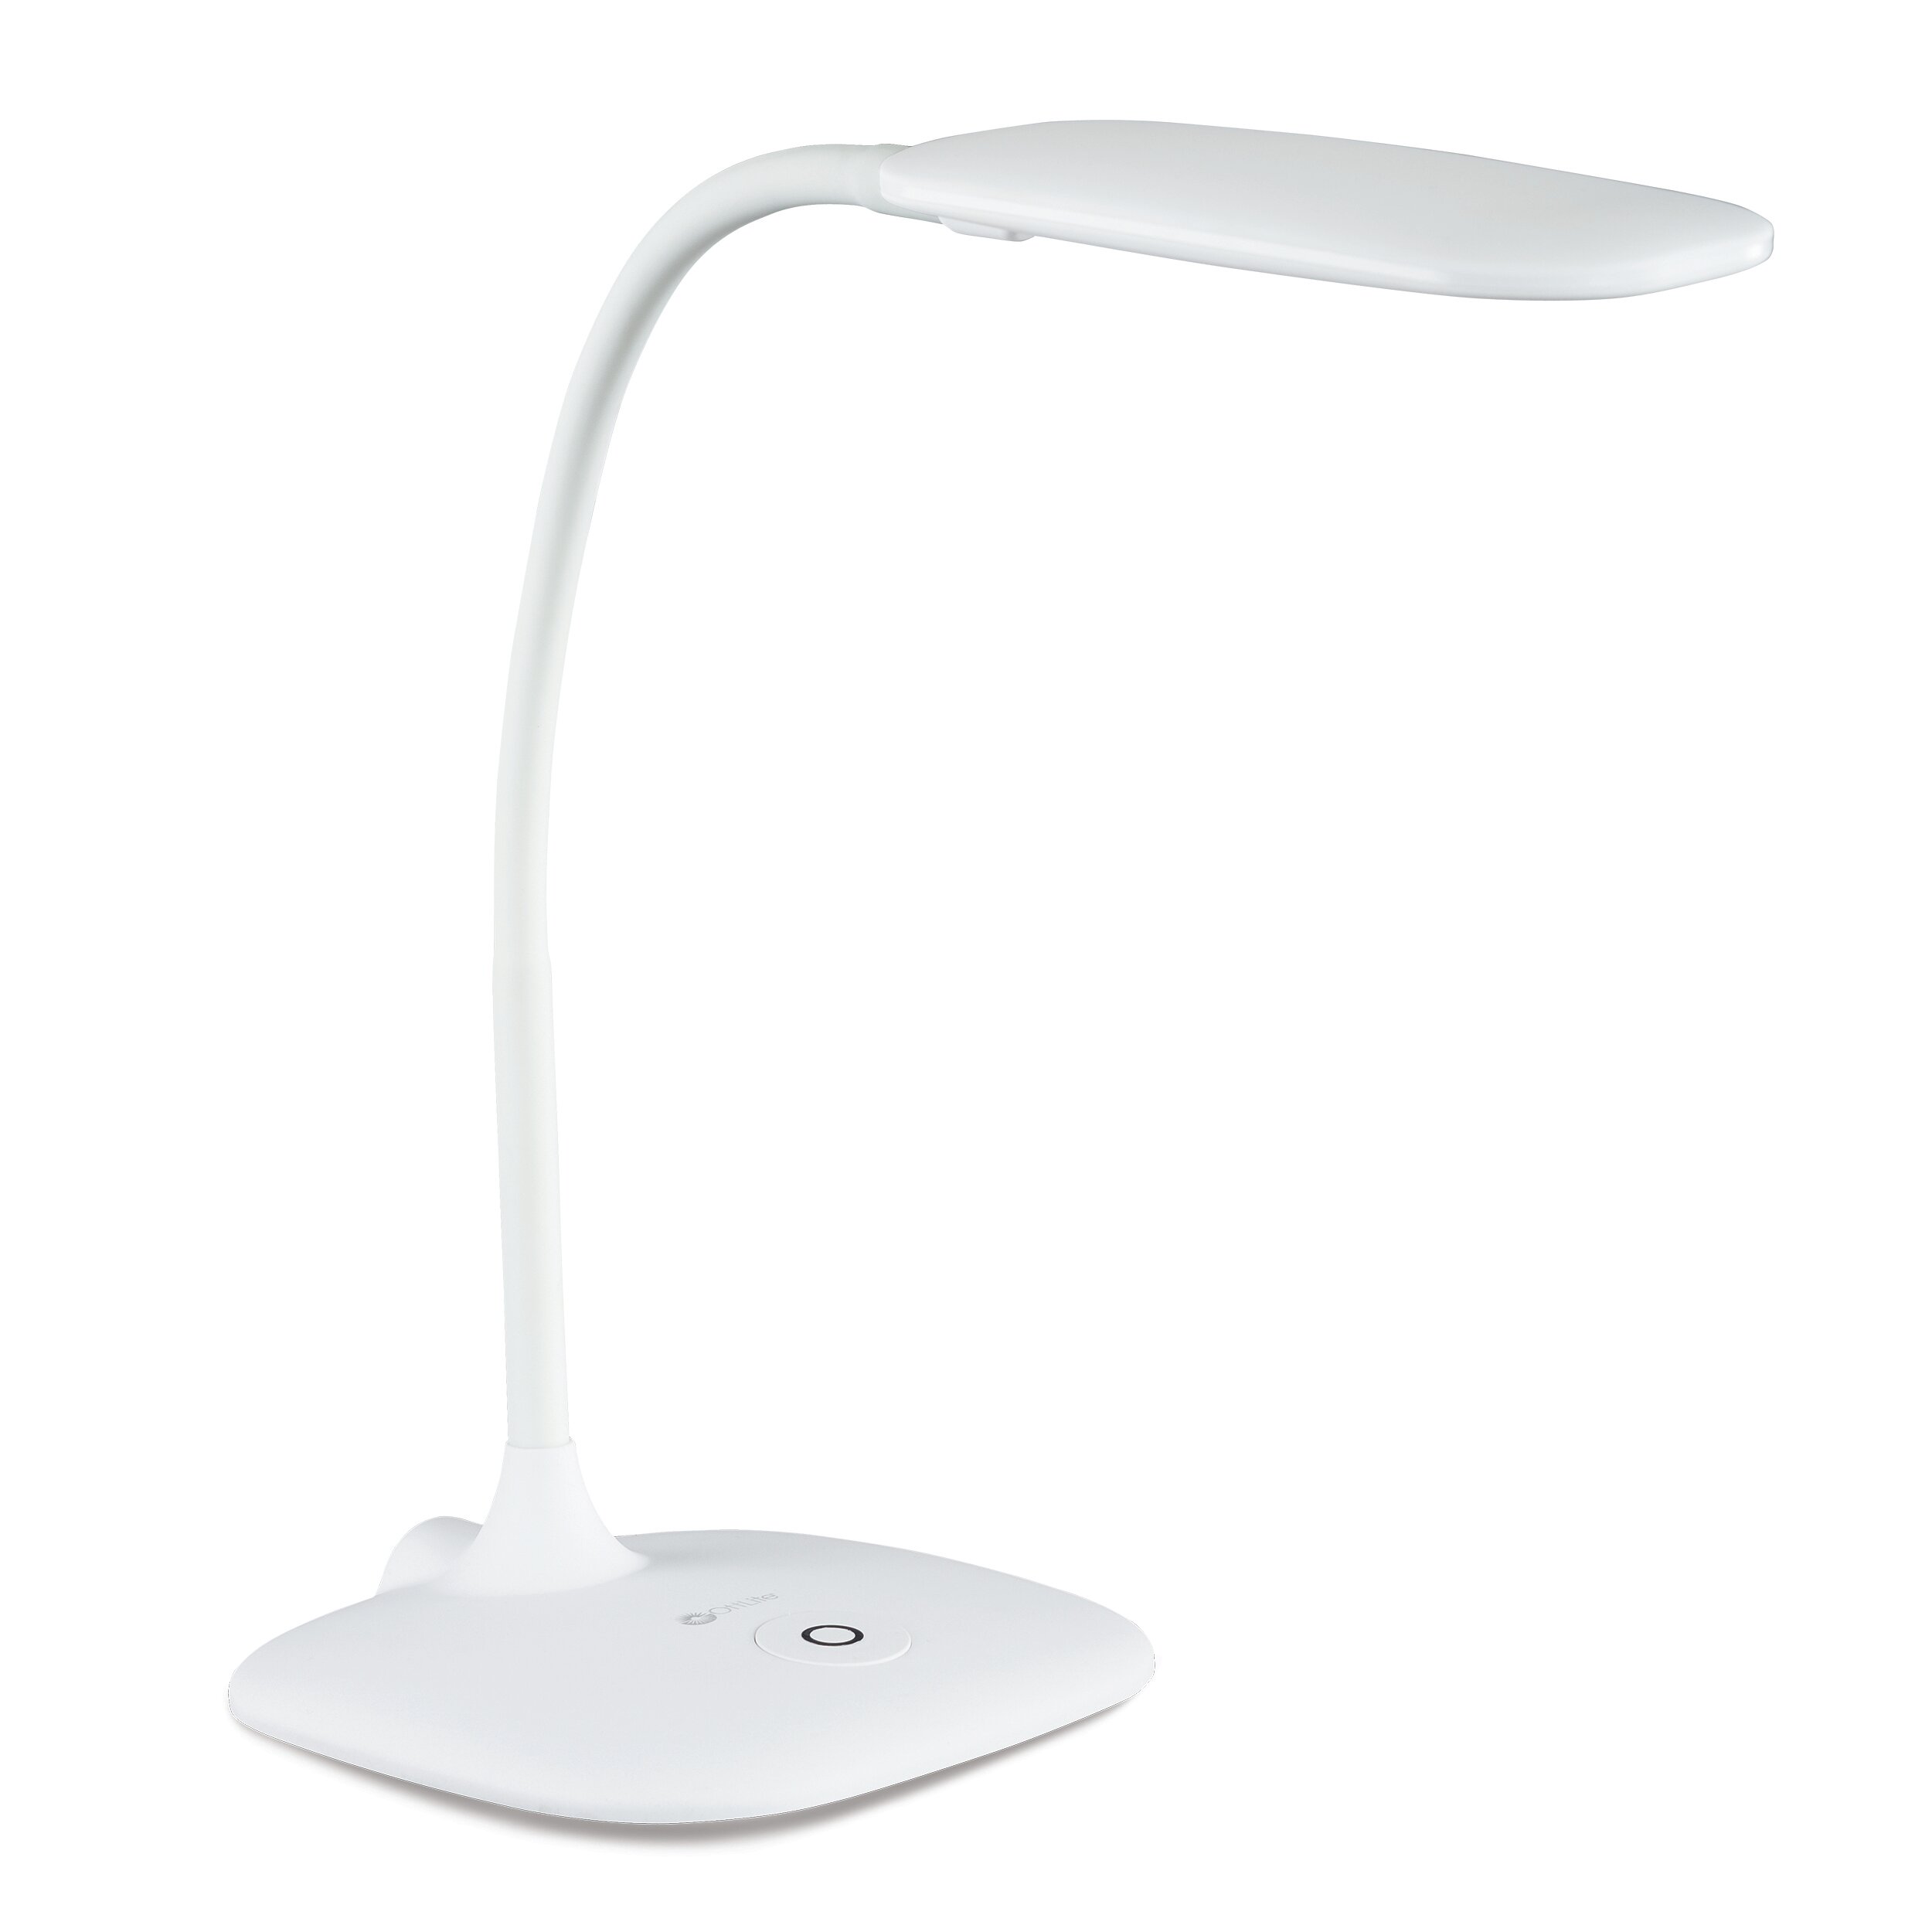 Prevention by OttLite, LED Flexible Magnifier Lamp